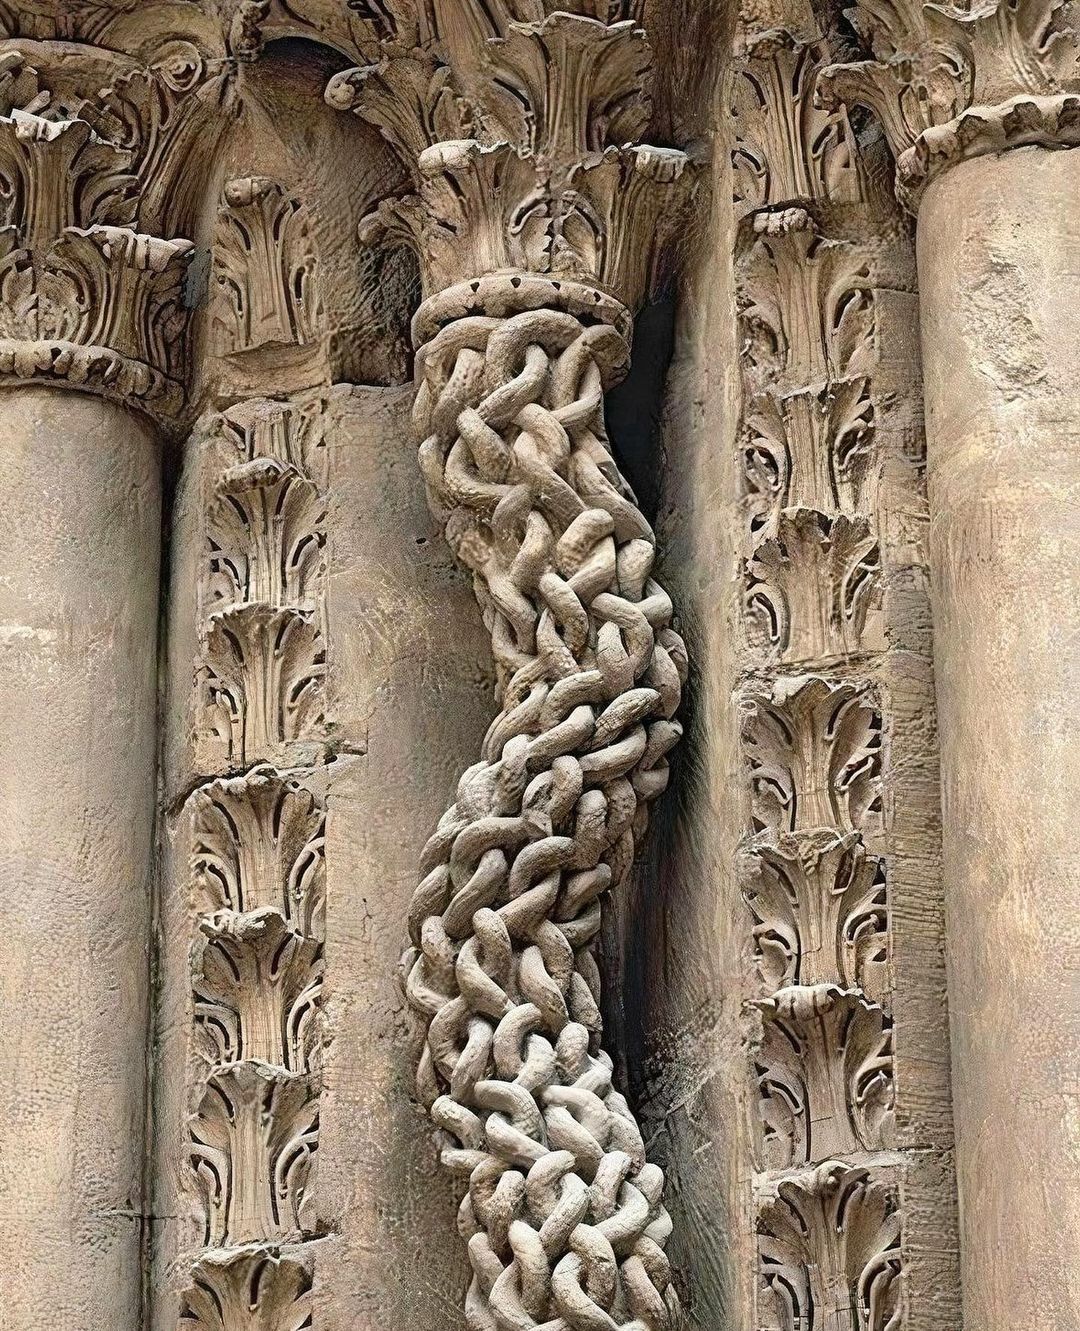 colonne de maillon de chaîne en pierre sculptée datant de 1106. trouvée sur la façade de la collégiale saint-lazare d’avallon en france.